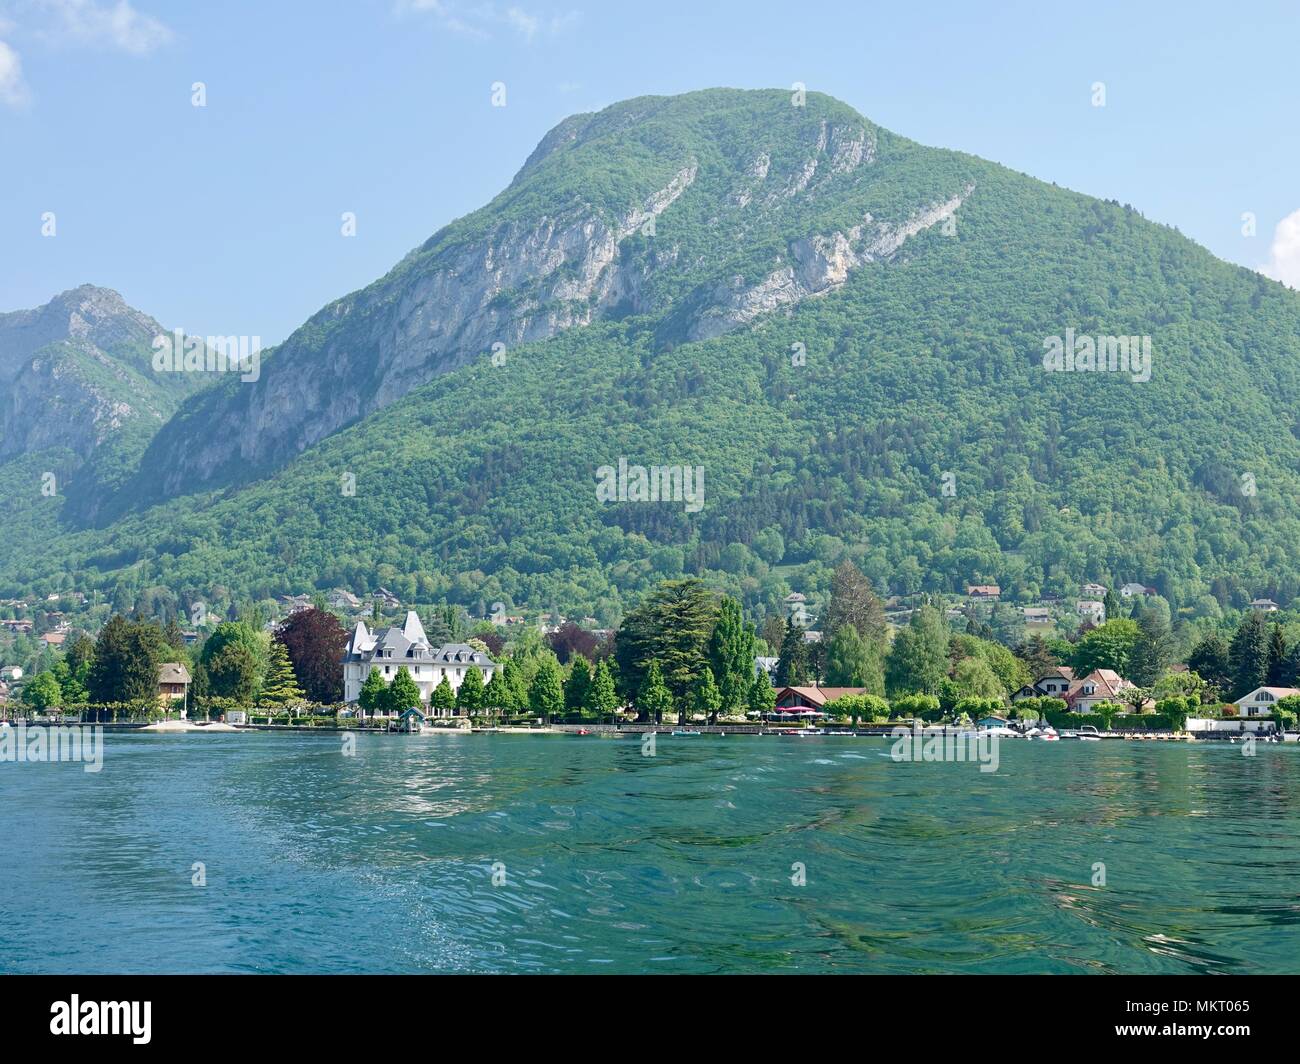 Vue sur le paysage de montagne au-delà des rives du lac d'Annecy à Menton-Saint-Bernard, France. Banque D'Images